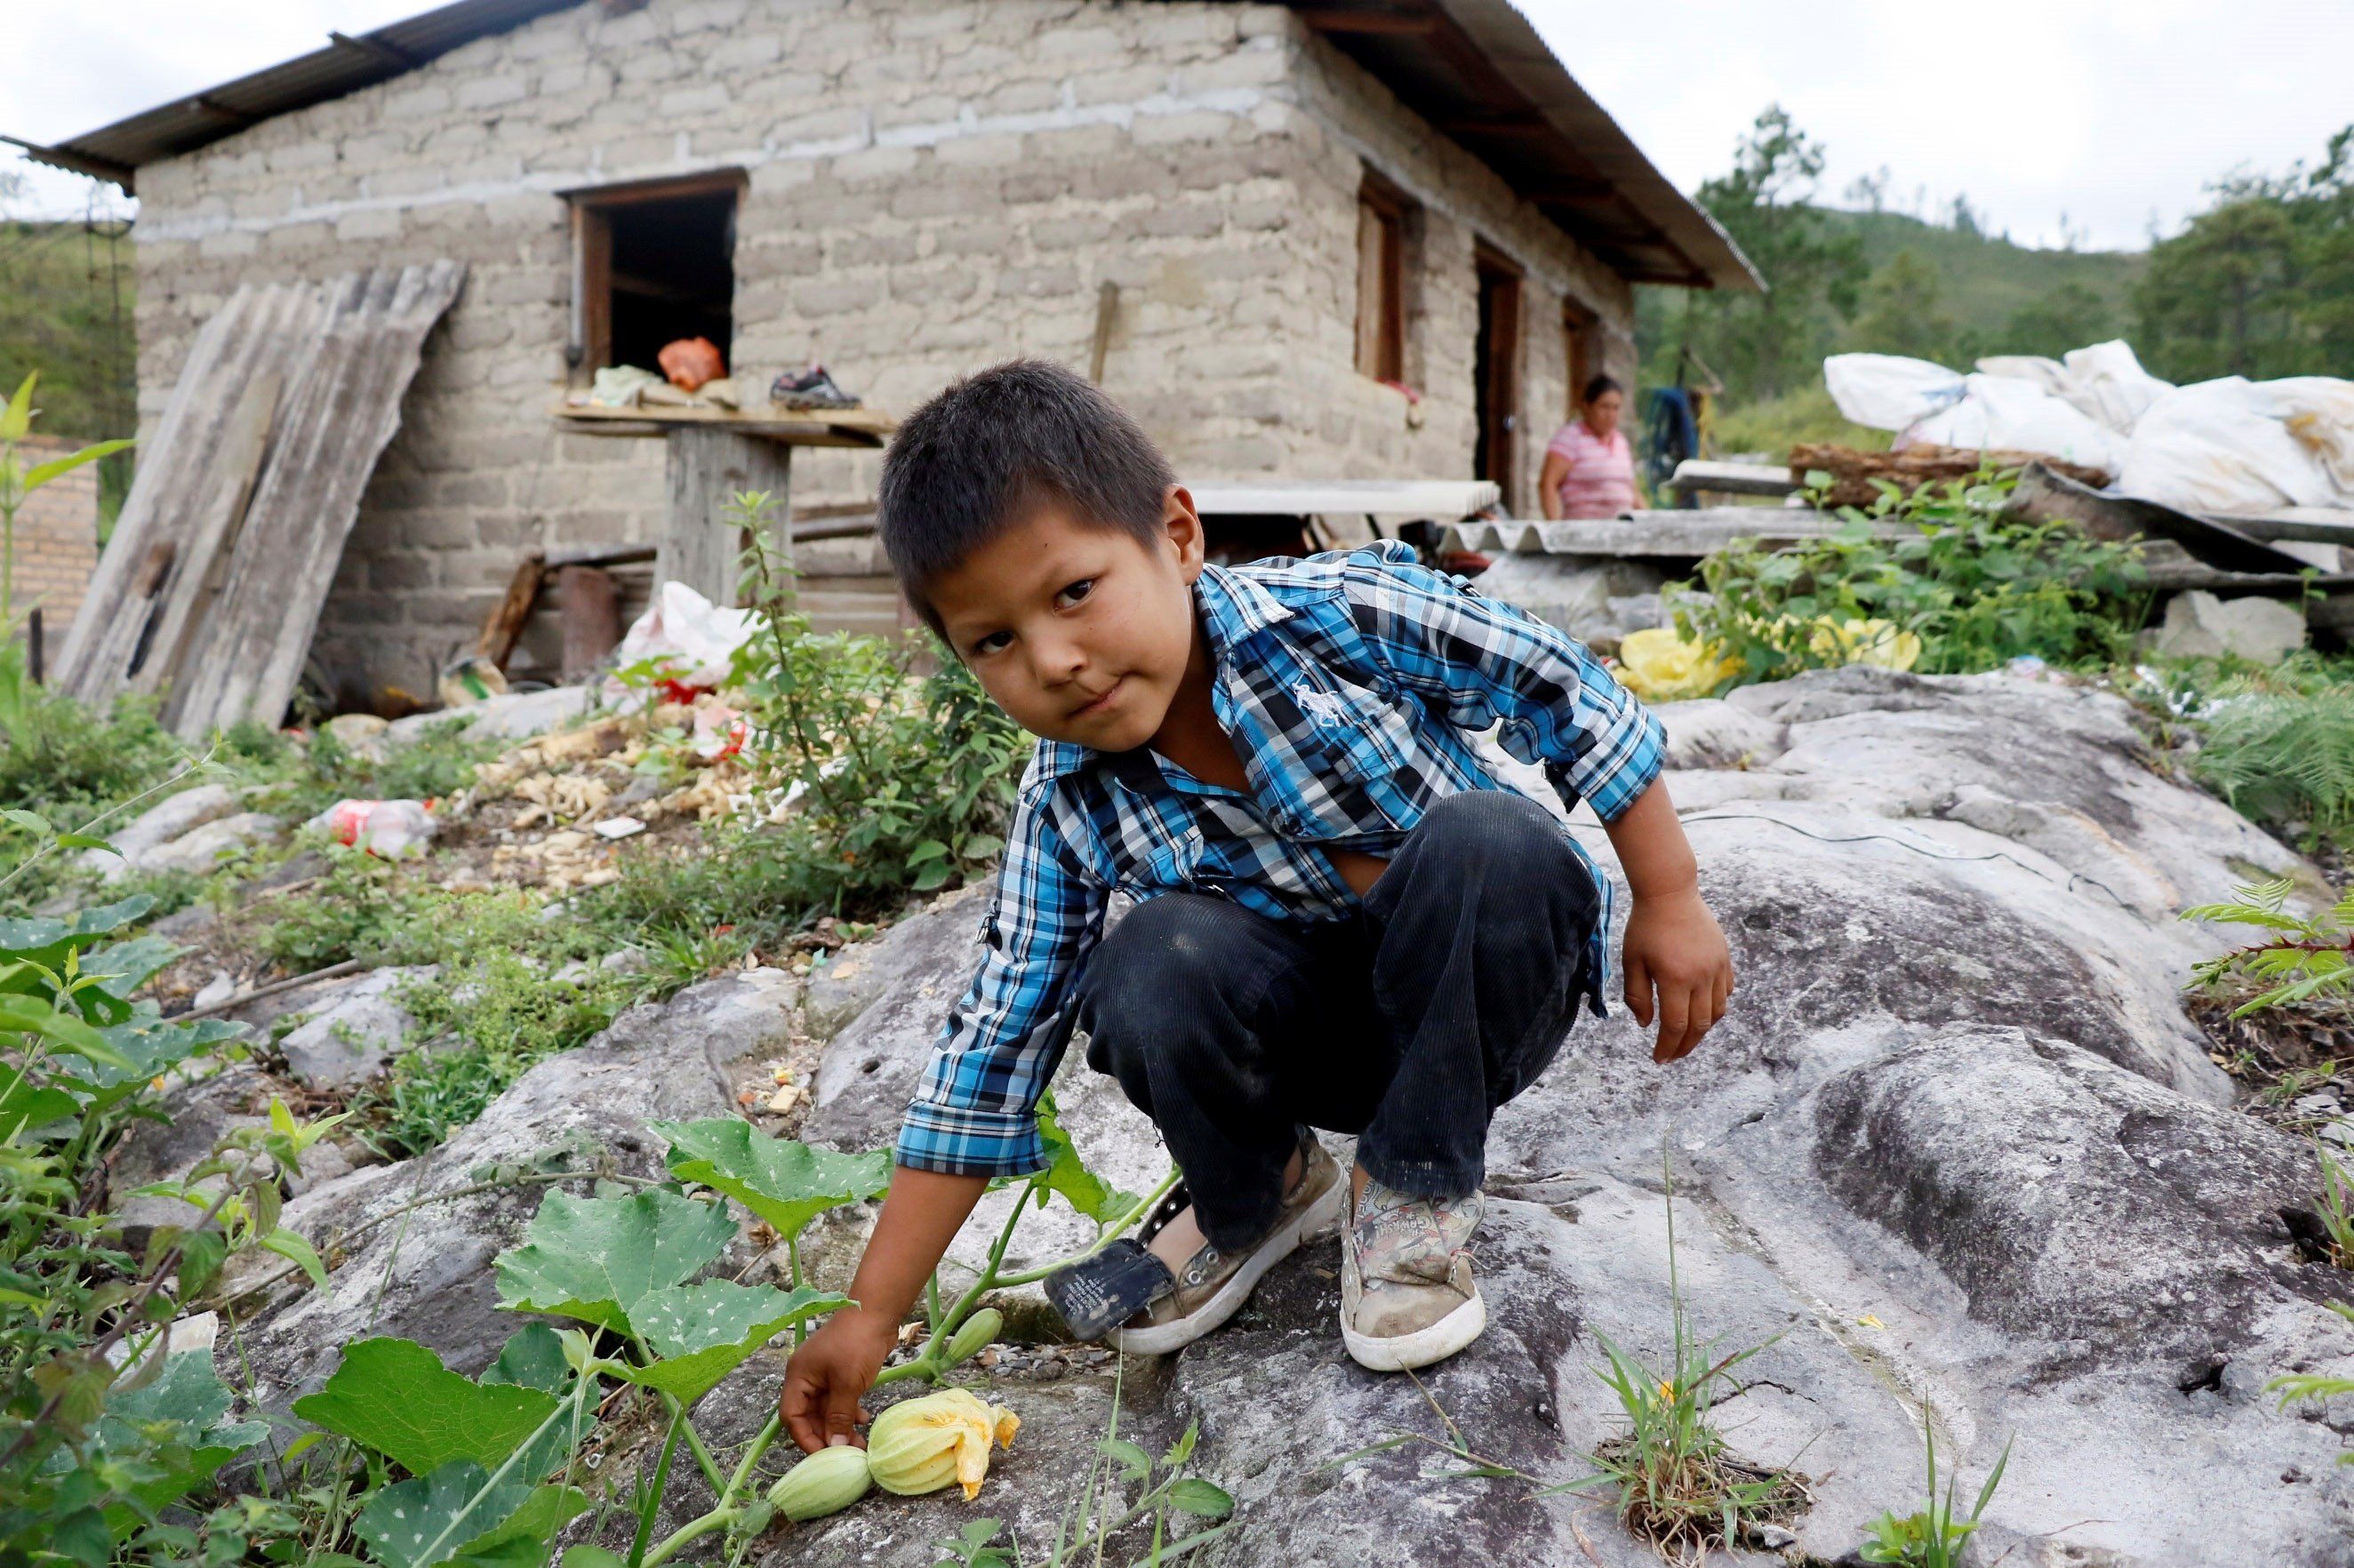 Una familia realiza labores domésticas hoy, sábado, en el valle de amárateca al norte de la capital. EFE/Humberto Espinoza 